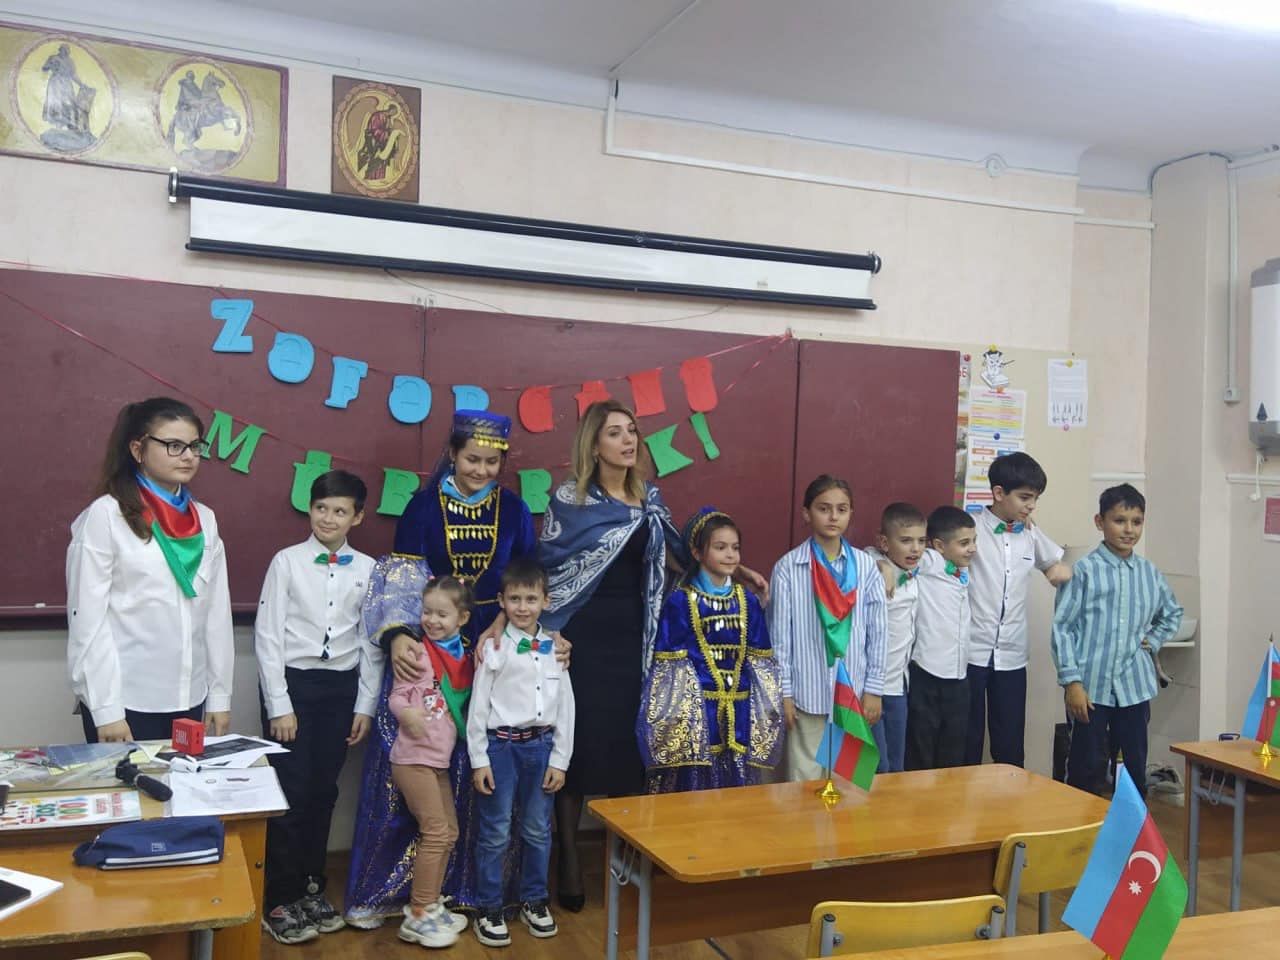 Moldovanın Benderi şəhərindəki Azərbaycan məktəbində Zəfər Günü bayram edilib